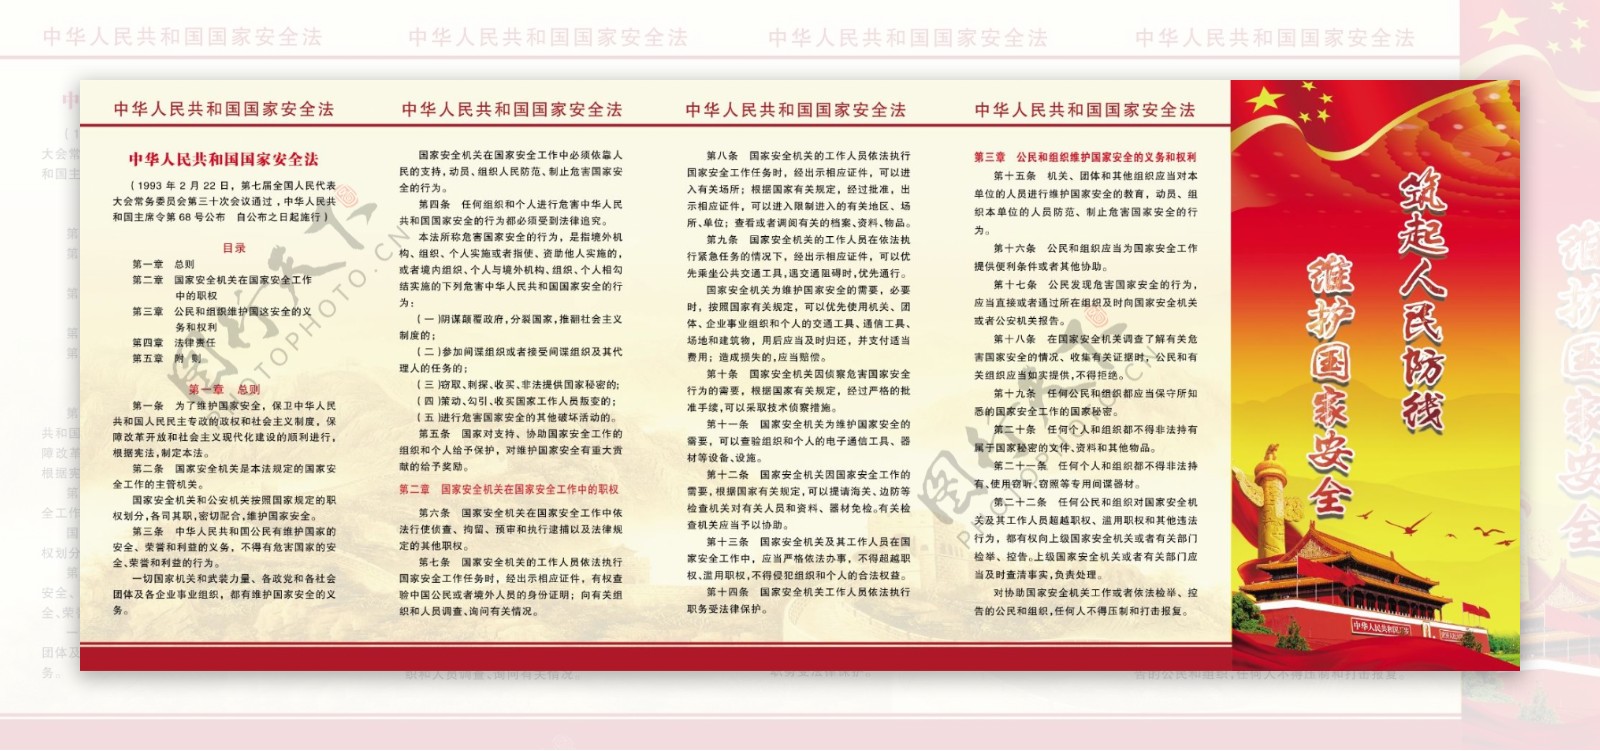 中华人民共和国国家安全法册子